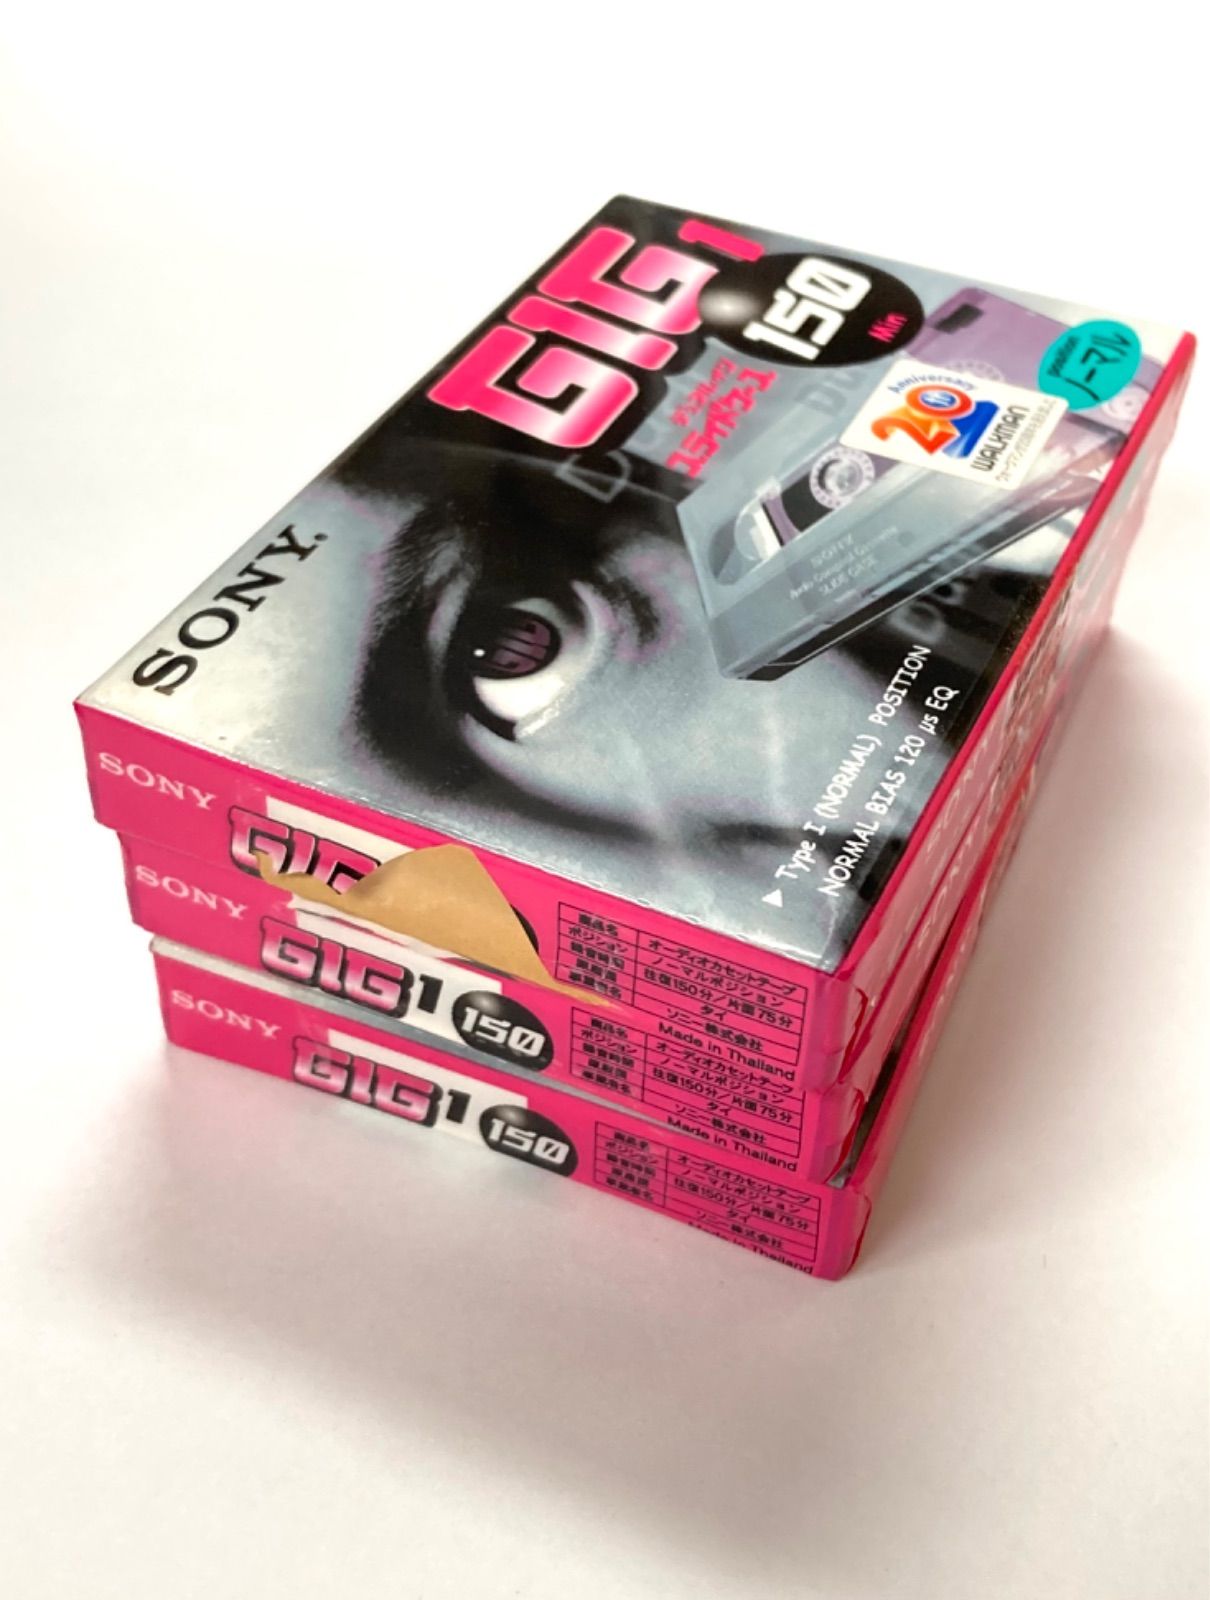 カセットテープ SONY 未使用品 GIG1 150分 ノーマル 3本セット - メルカリ